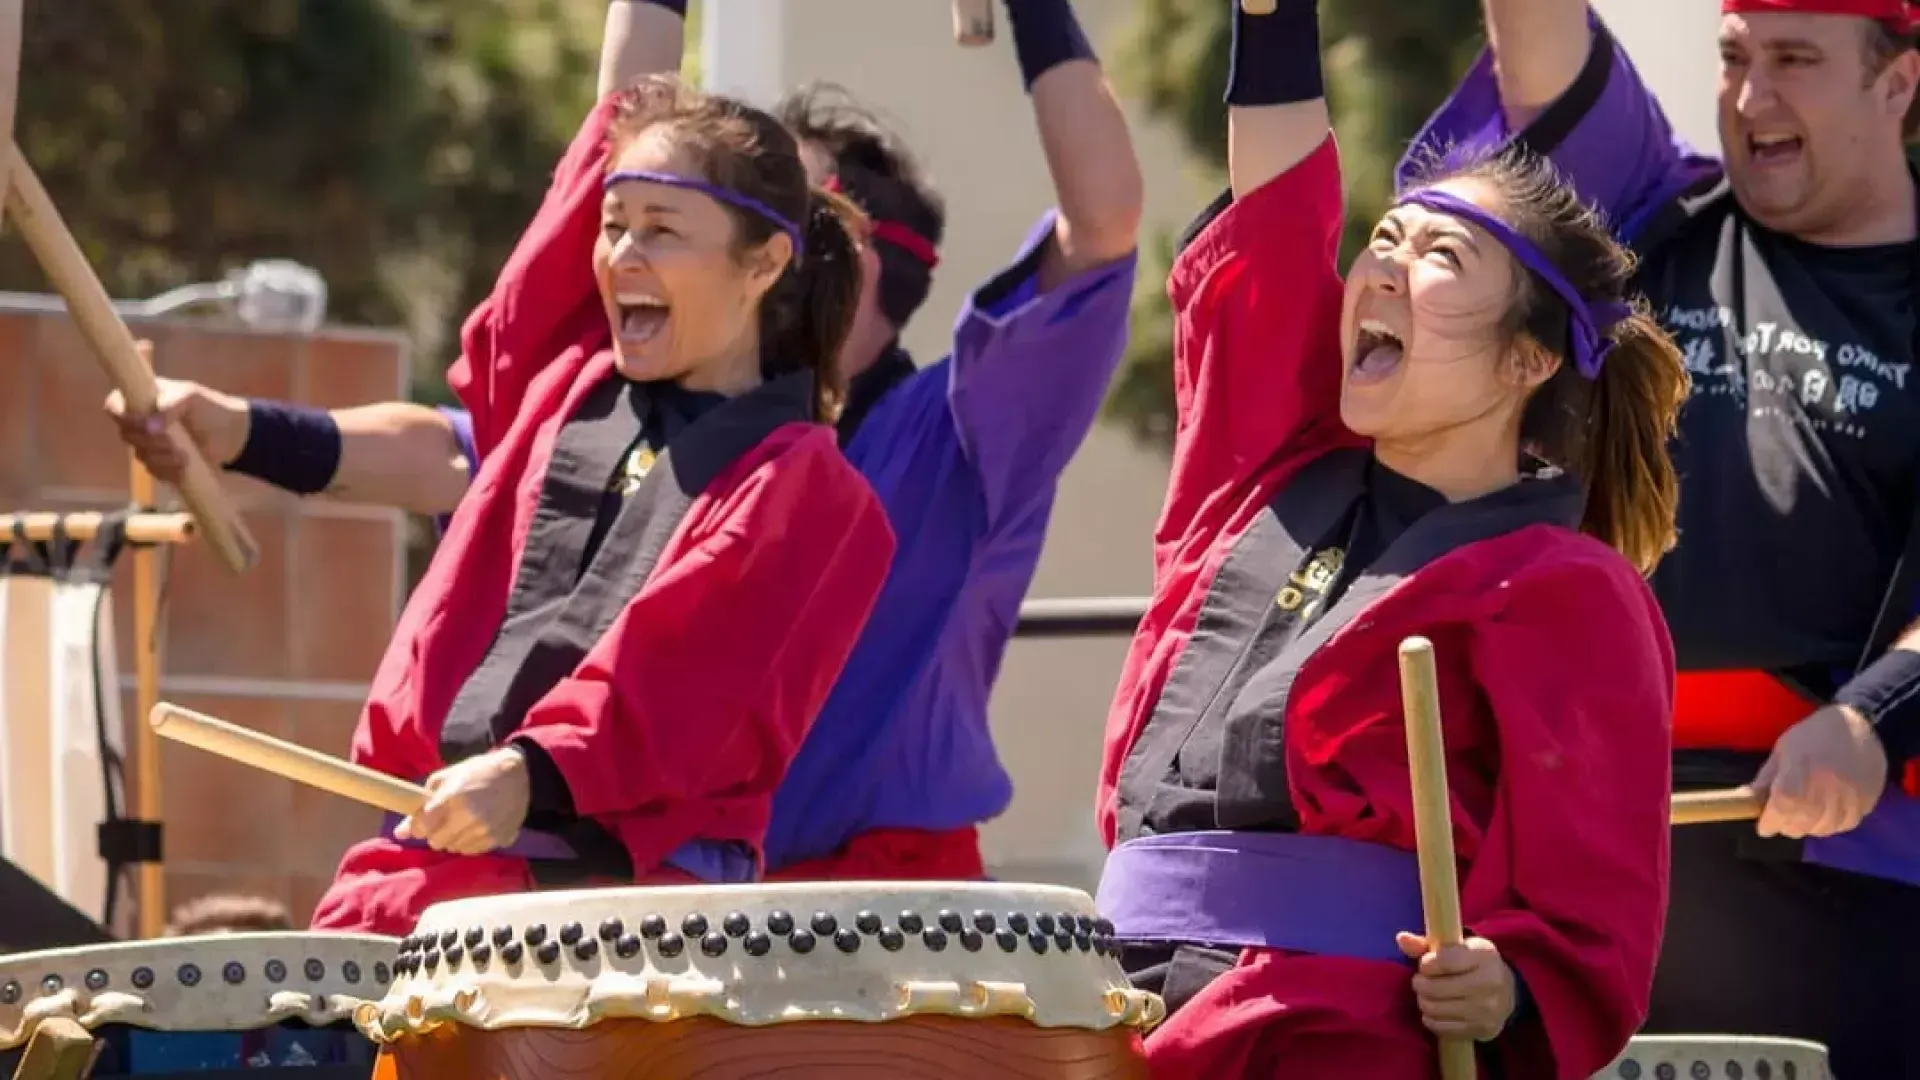 毎年恒例の桜祭りに参加するジャパンタウンの太鼓奏者